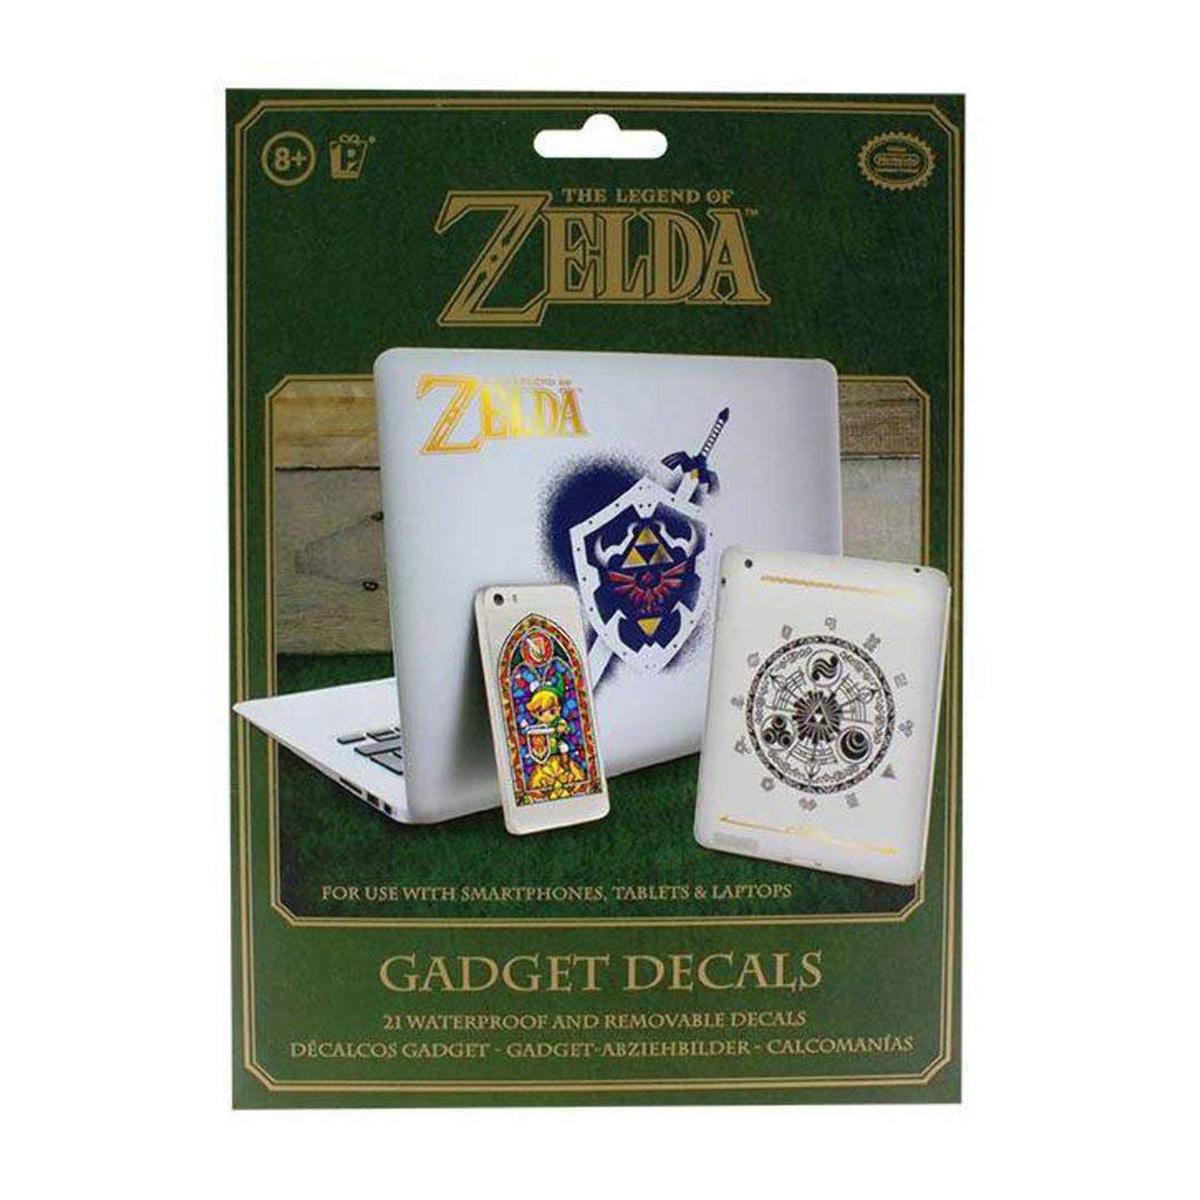 The Legend of Zelda - Pack de Pegatinas, Merchandising